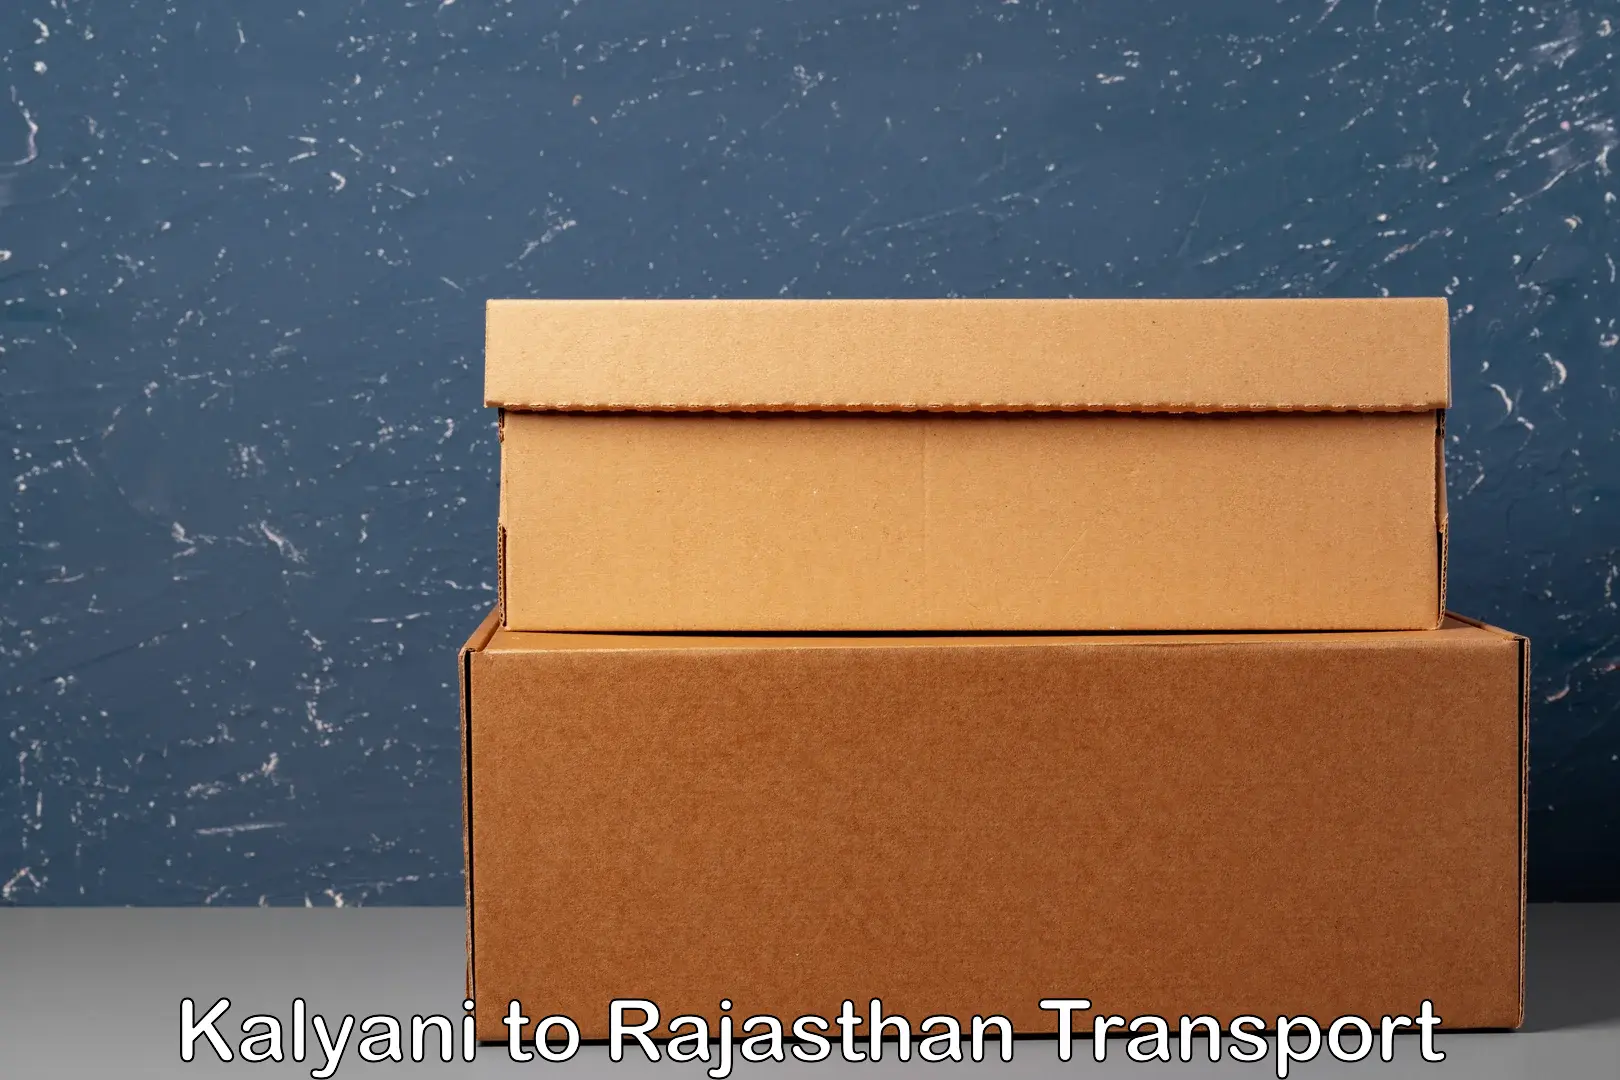 Road transport services Kalyani to Rajgarh Rajasthan